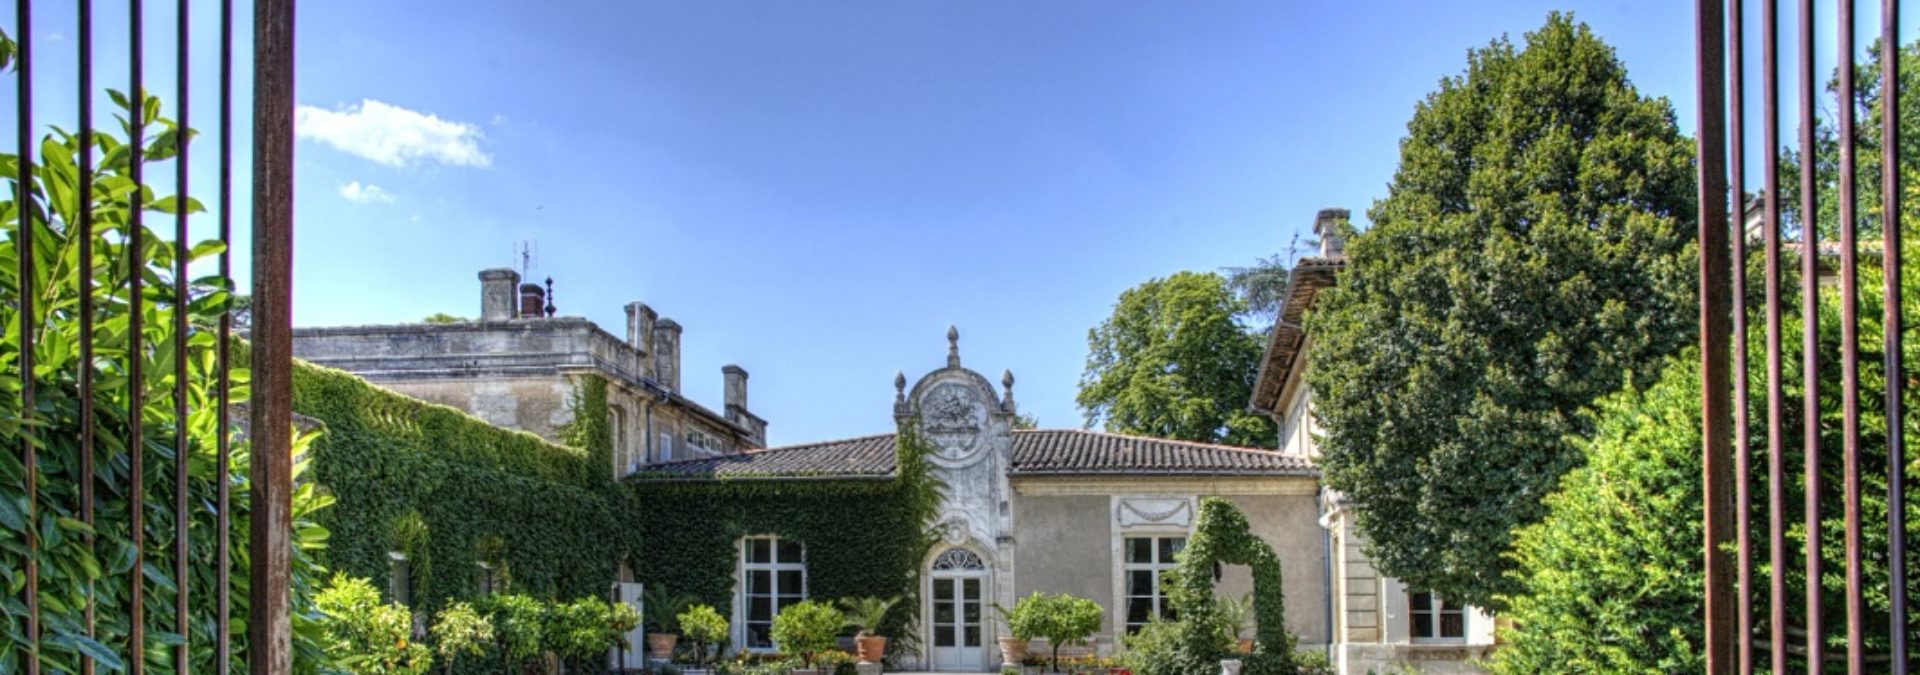 Château Fayau